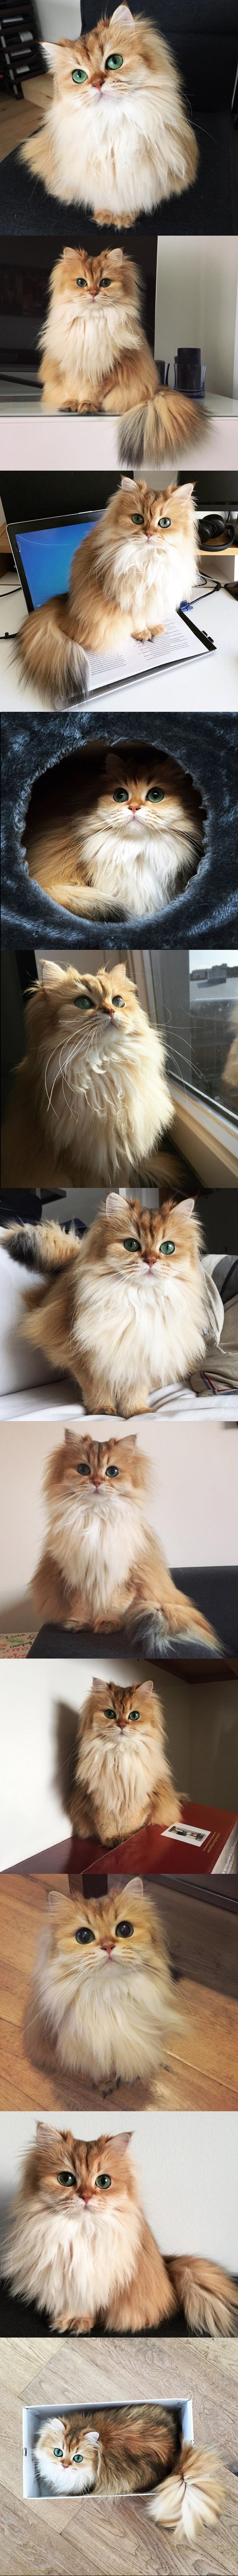 Fotogenična mačka koja je osvojila internet